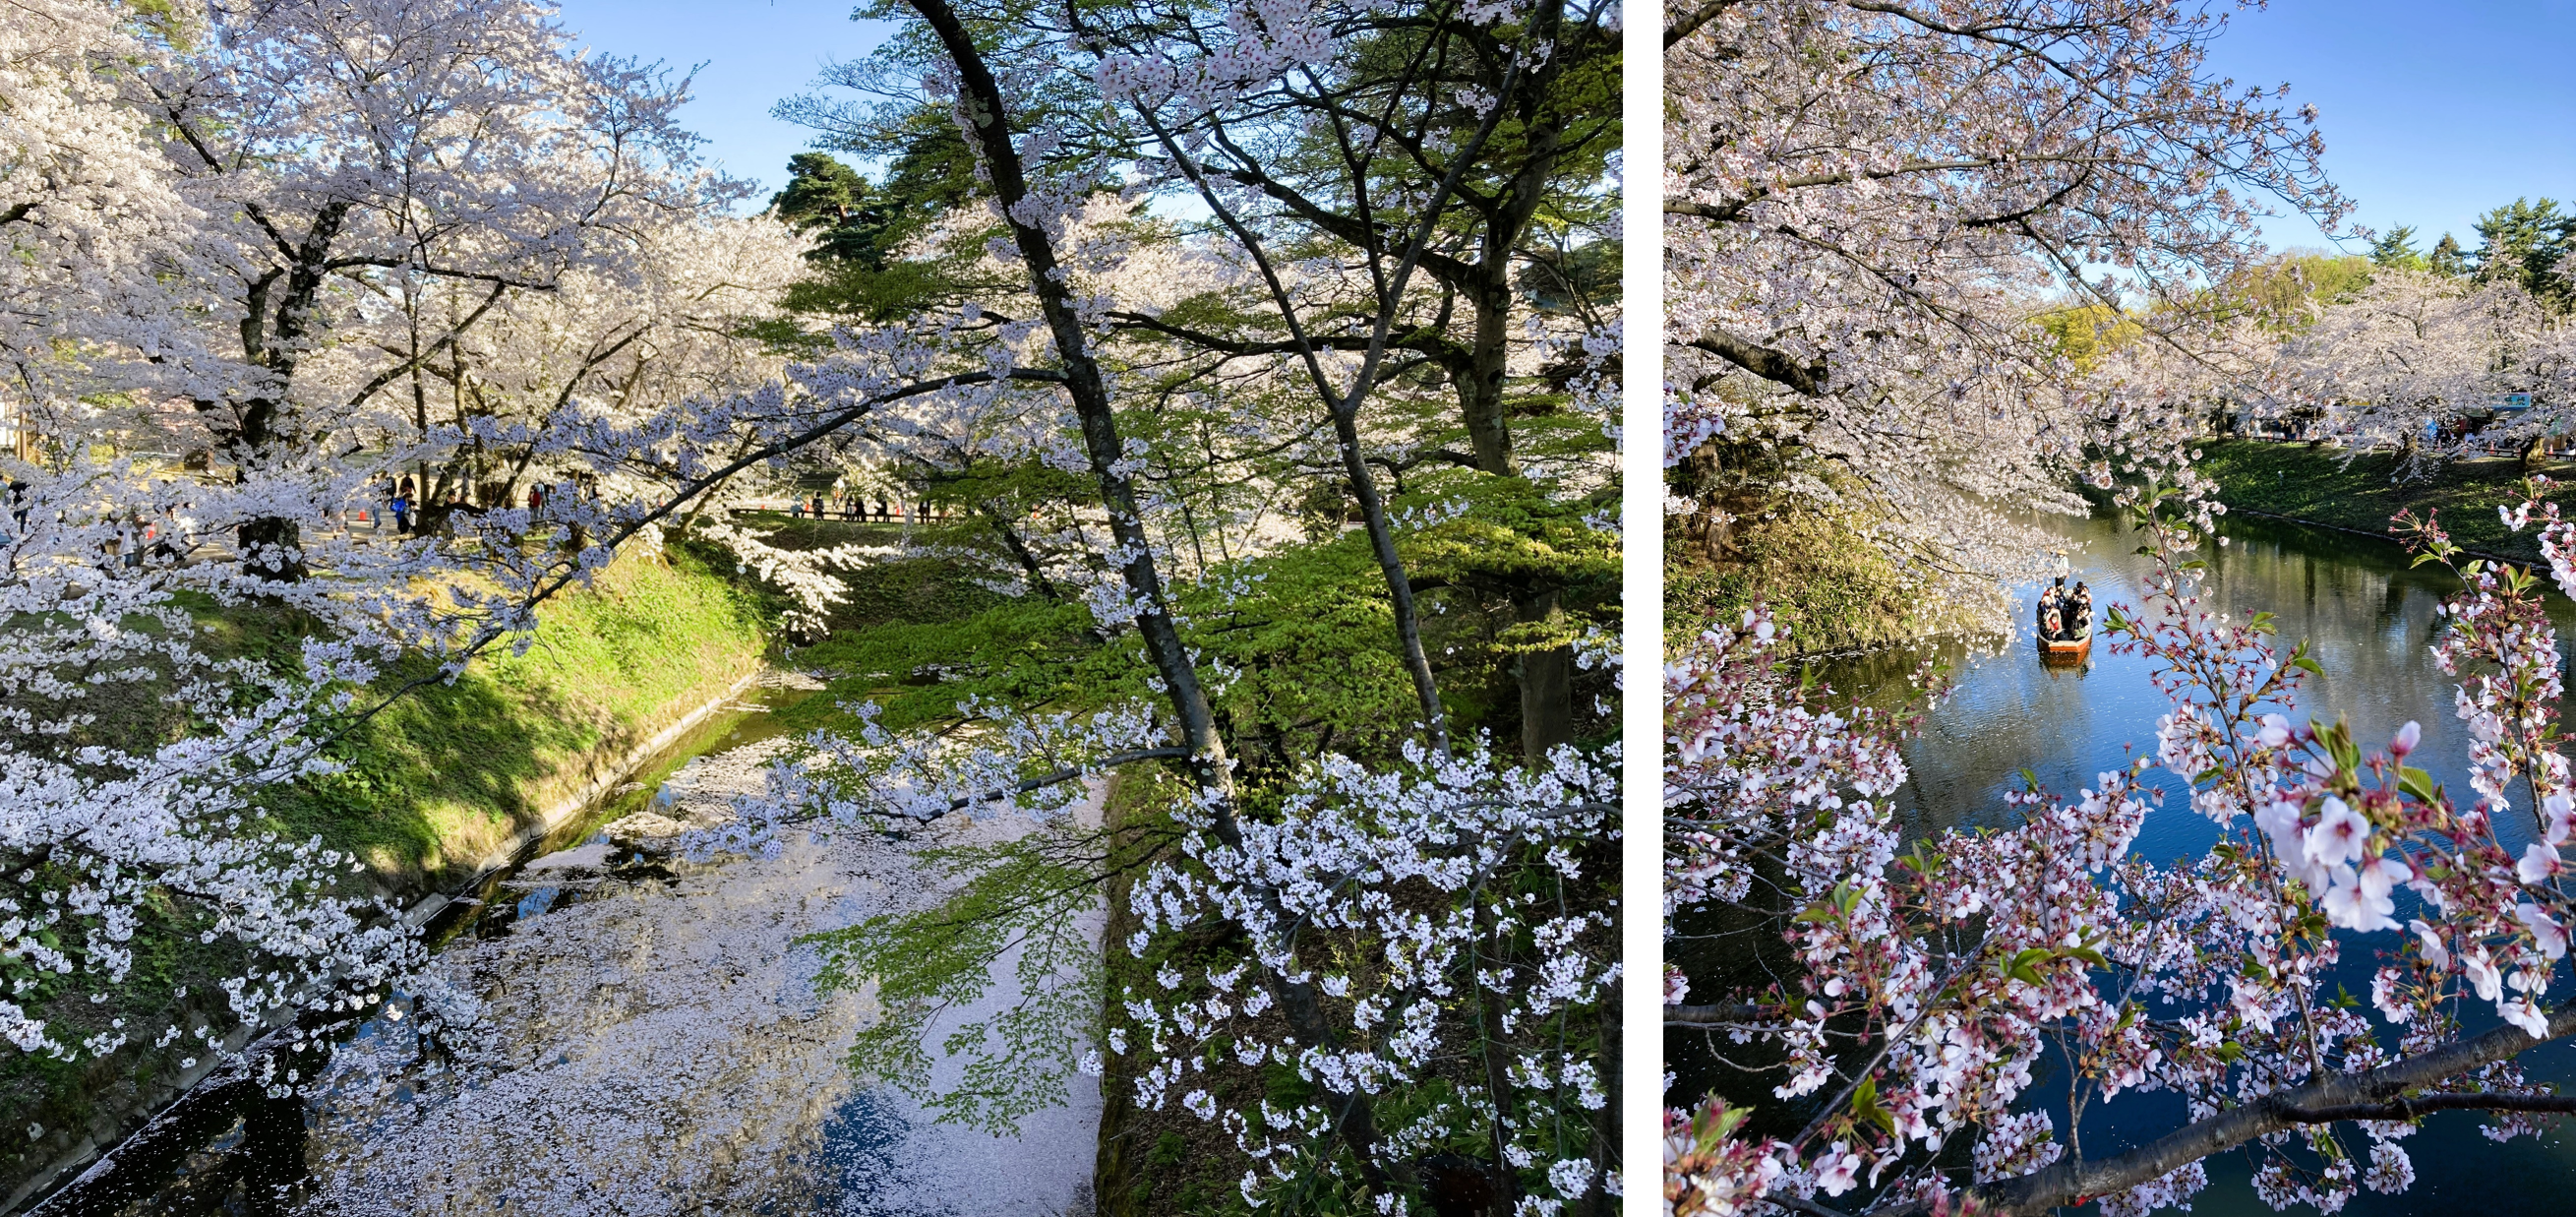 見どころ・花見スポット・楽しみ方！弘前さくらまつりは青森県弘前市の弘前公園（弘前城）で開催する、毎年約200万人がお花見を楽しむ日本一の桜祭りです。弘前さくらまつりの見どころ・お花見スポット・楽しみ方についてご紹介します。弘前公園の桜の名所・見どころ！弘前さくらまつり期間の弘前公園の朝、昼、夜の見どころや桜の開花状態別の楽しみ方をご紹介します。弘前公園のおすすめ撮影スポット！弘前さくらまつり期間の弘前公園の撮影スポット・おすすめスポットをご紹介します。弘前公園のお花見スポット！弘前さくらまつり期間の弘前公園の朝、昼、夜の見どころや桜の開花状態別の楽しみ方をご紹介します。